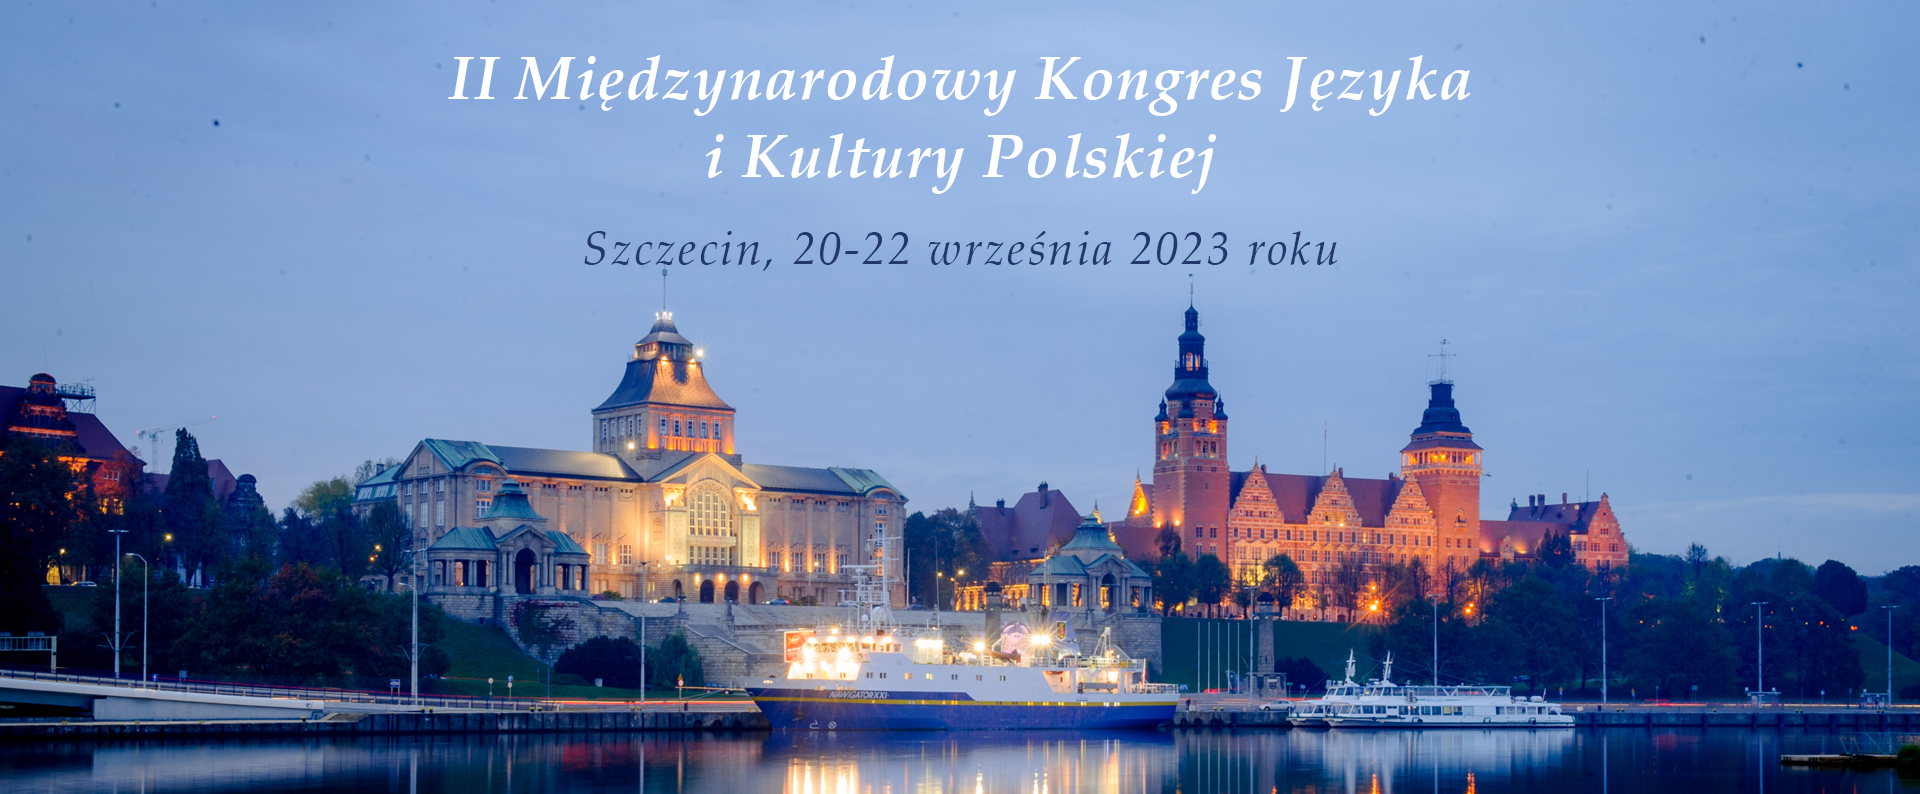 Zaproszenie II Międzynarodowy Kongres Języka i Kultury Polskiej